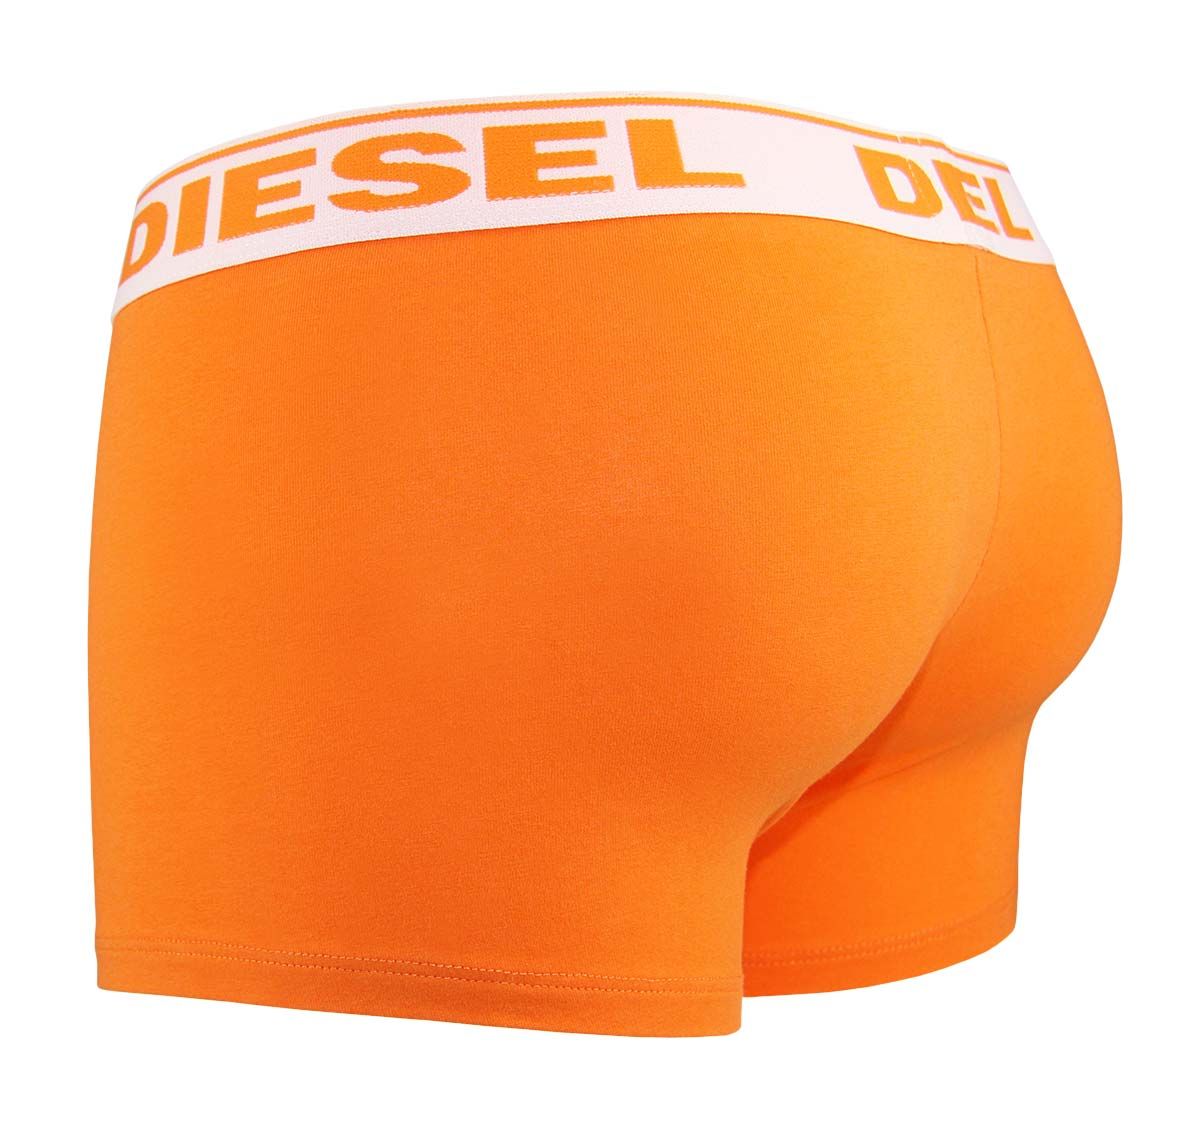 Diesel Boxer D6016-26Q SHAWN BOXER 00CG2N-0HADM-26Q, arancione